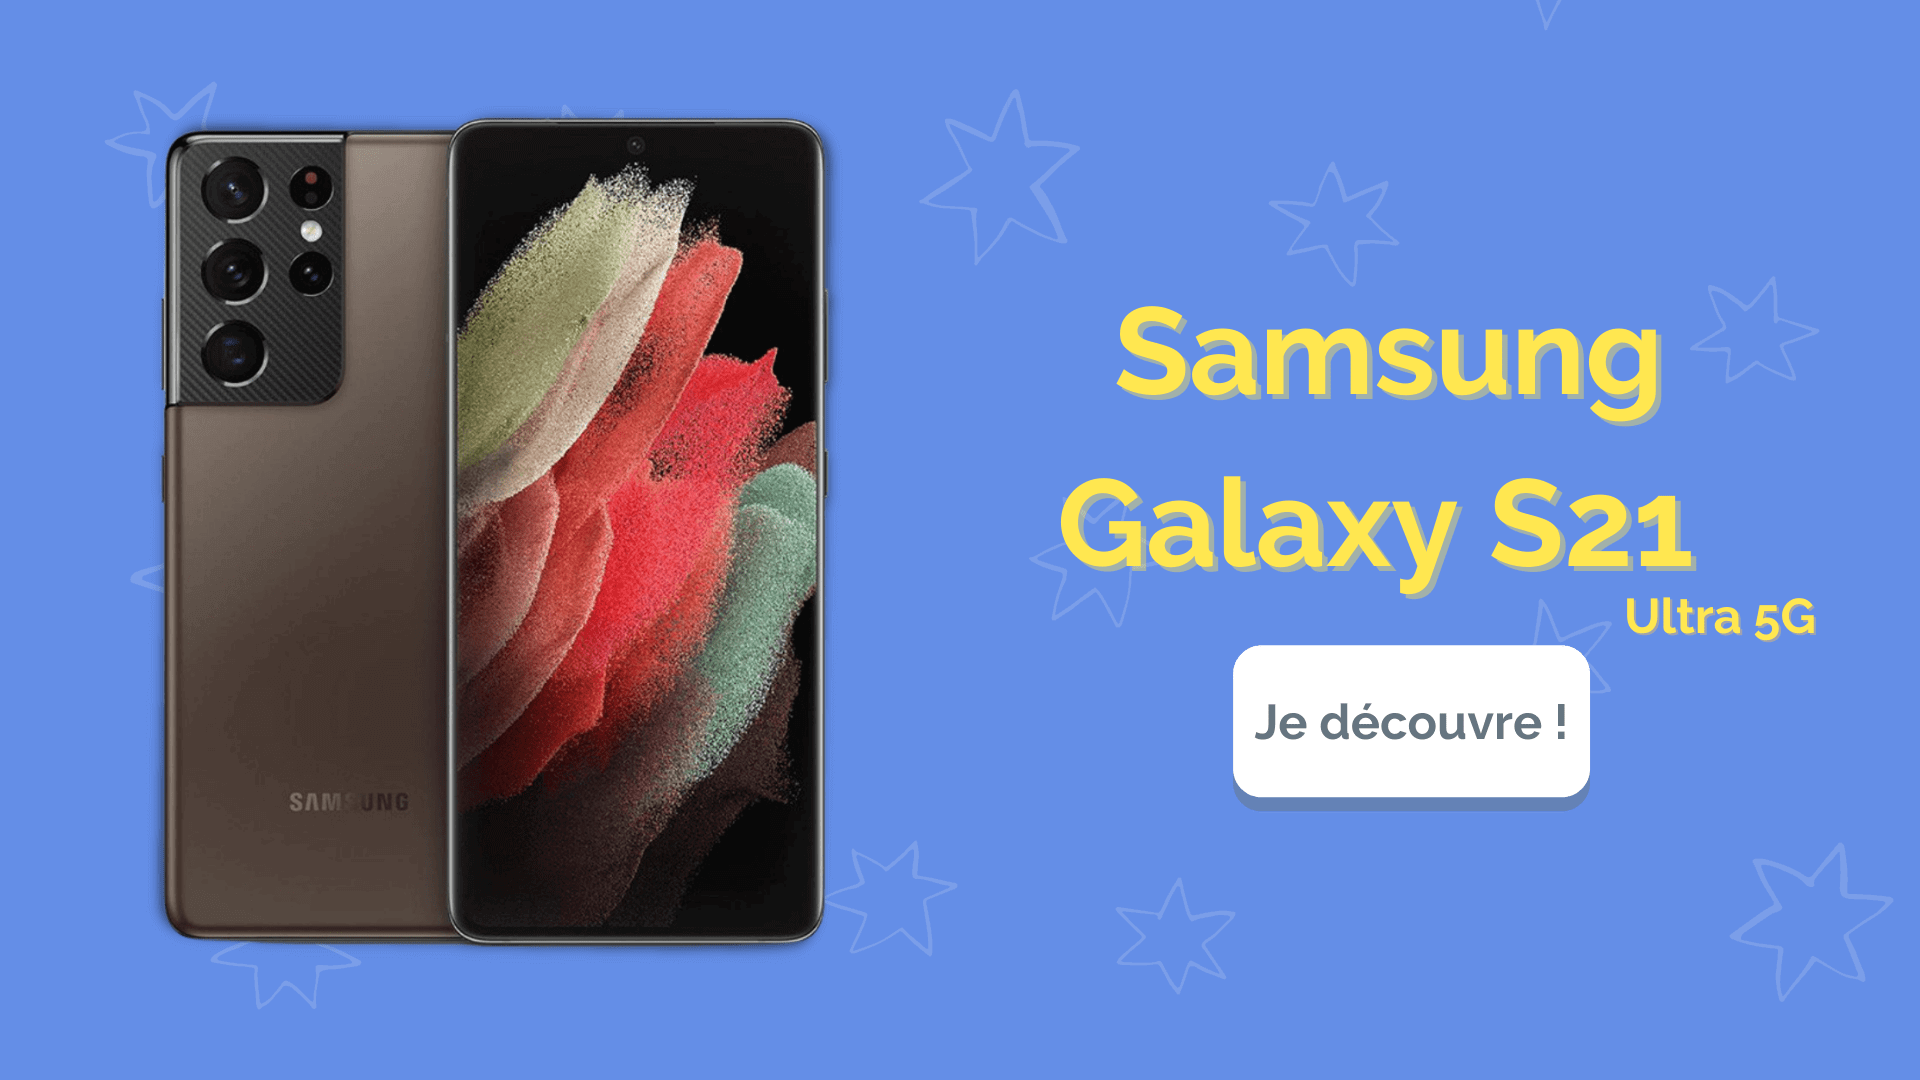  Samsung Galaxy S21 avis